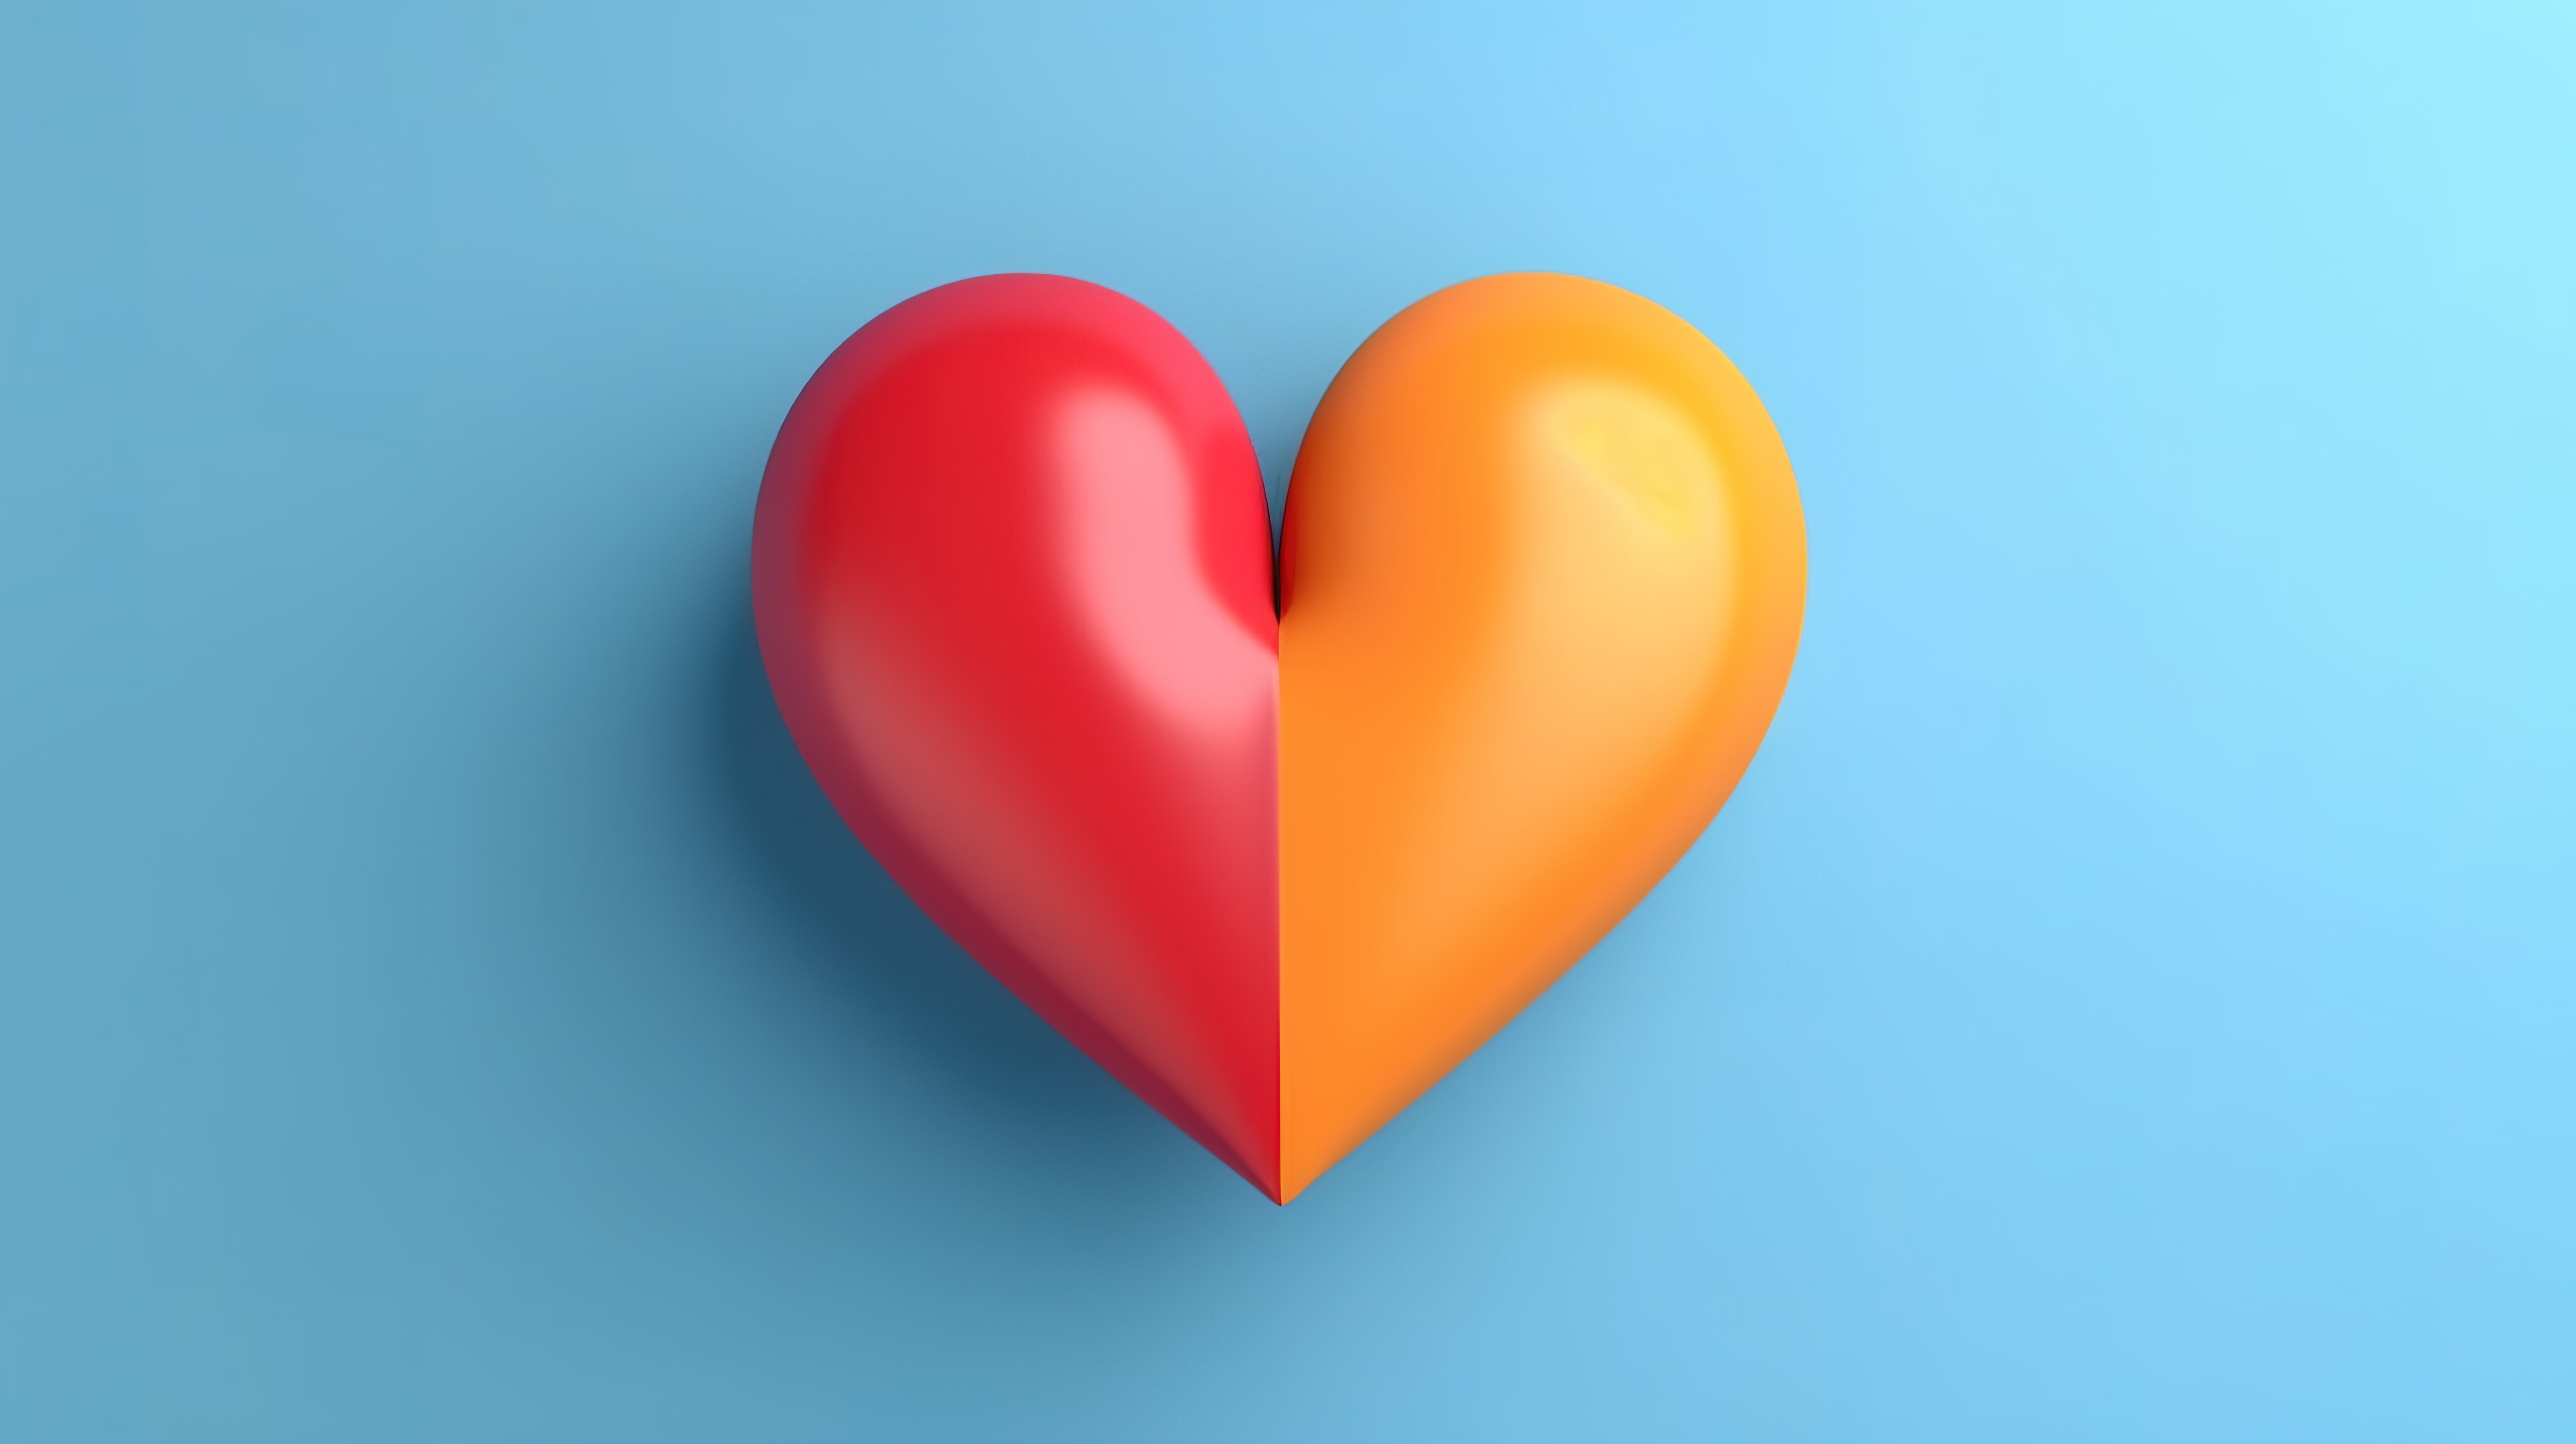 双色调彩虹和红心，以 3D 形式呈现的简约创意概念图片